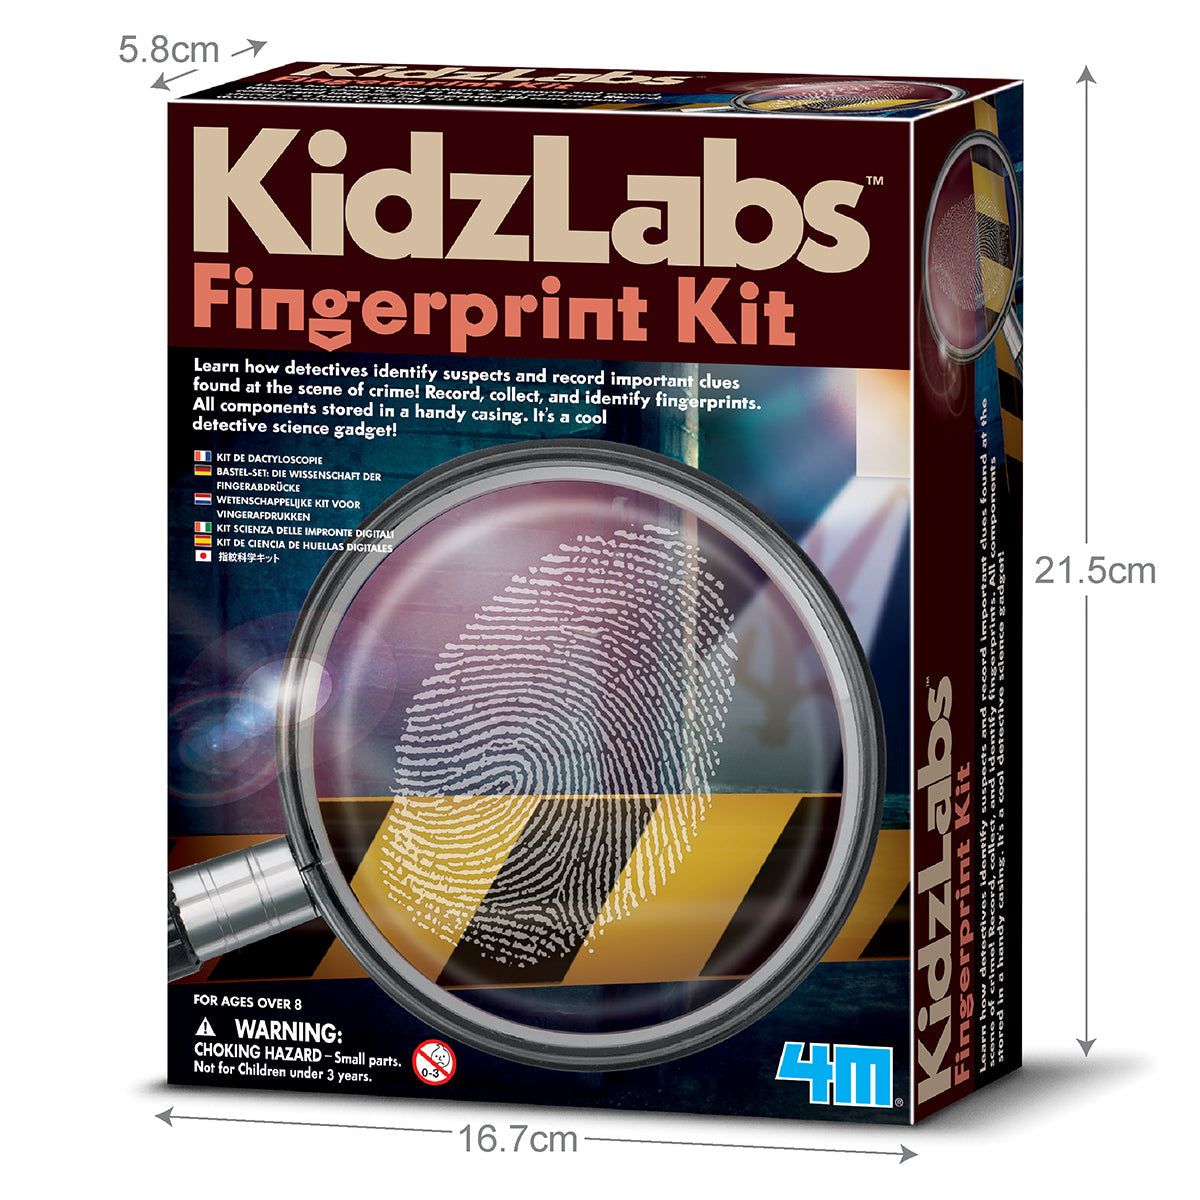 KidzLabs Fingerprint Kit